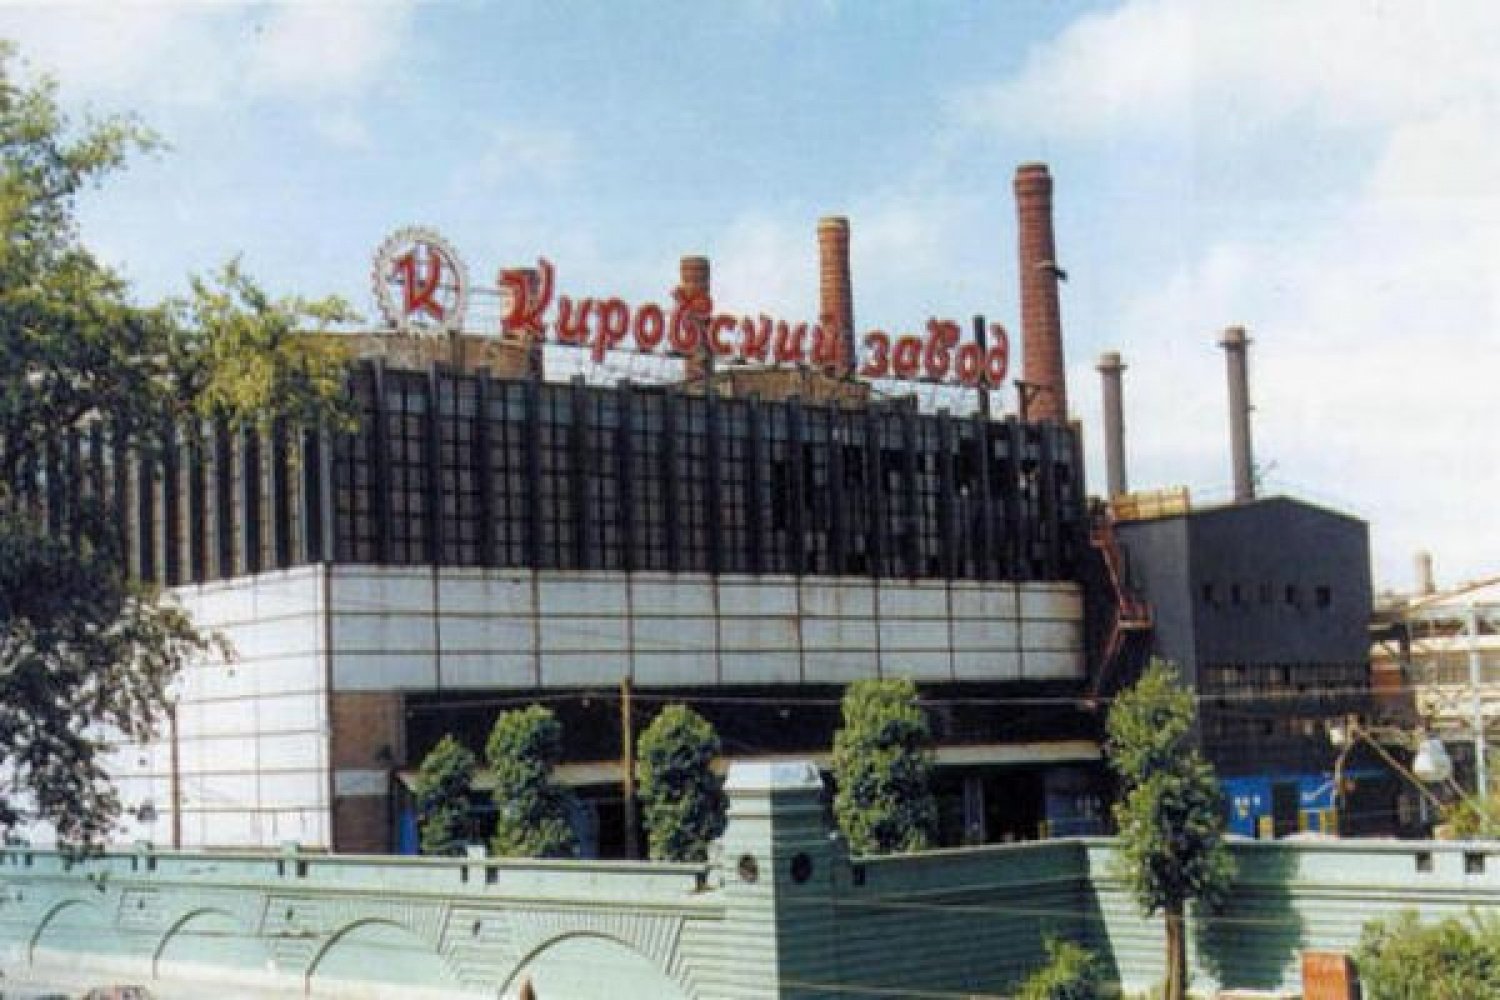 История кировского завода